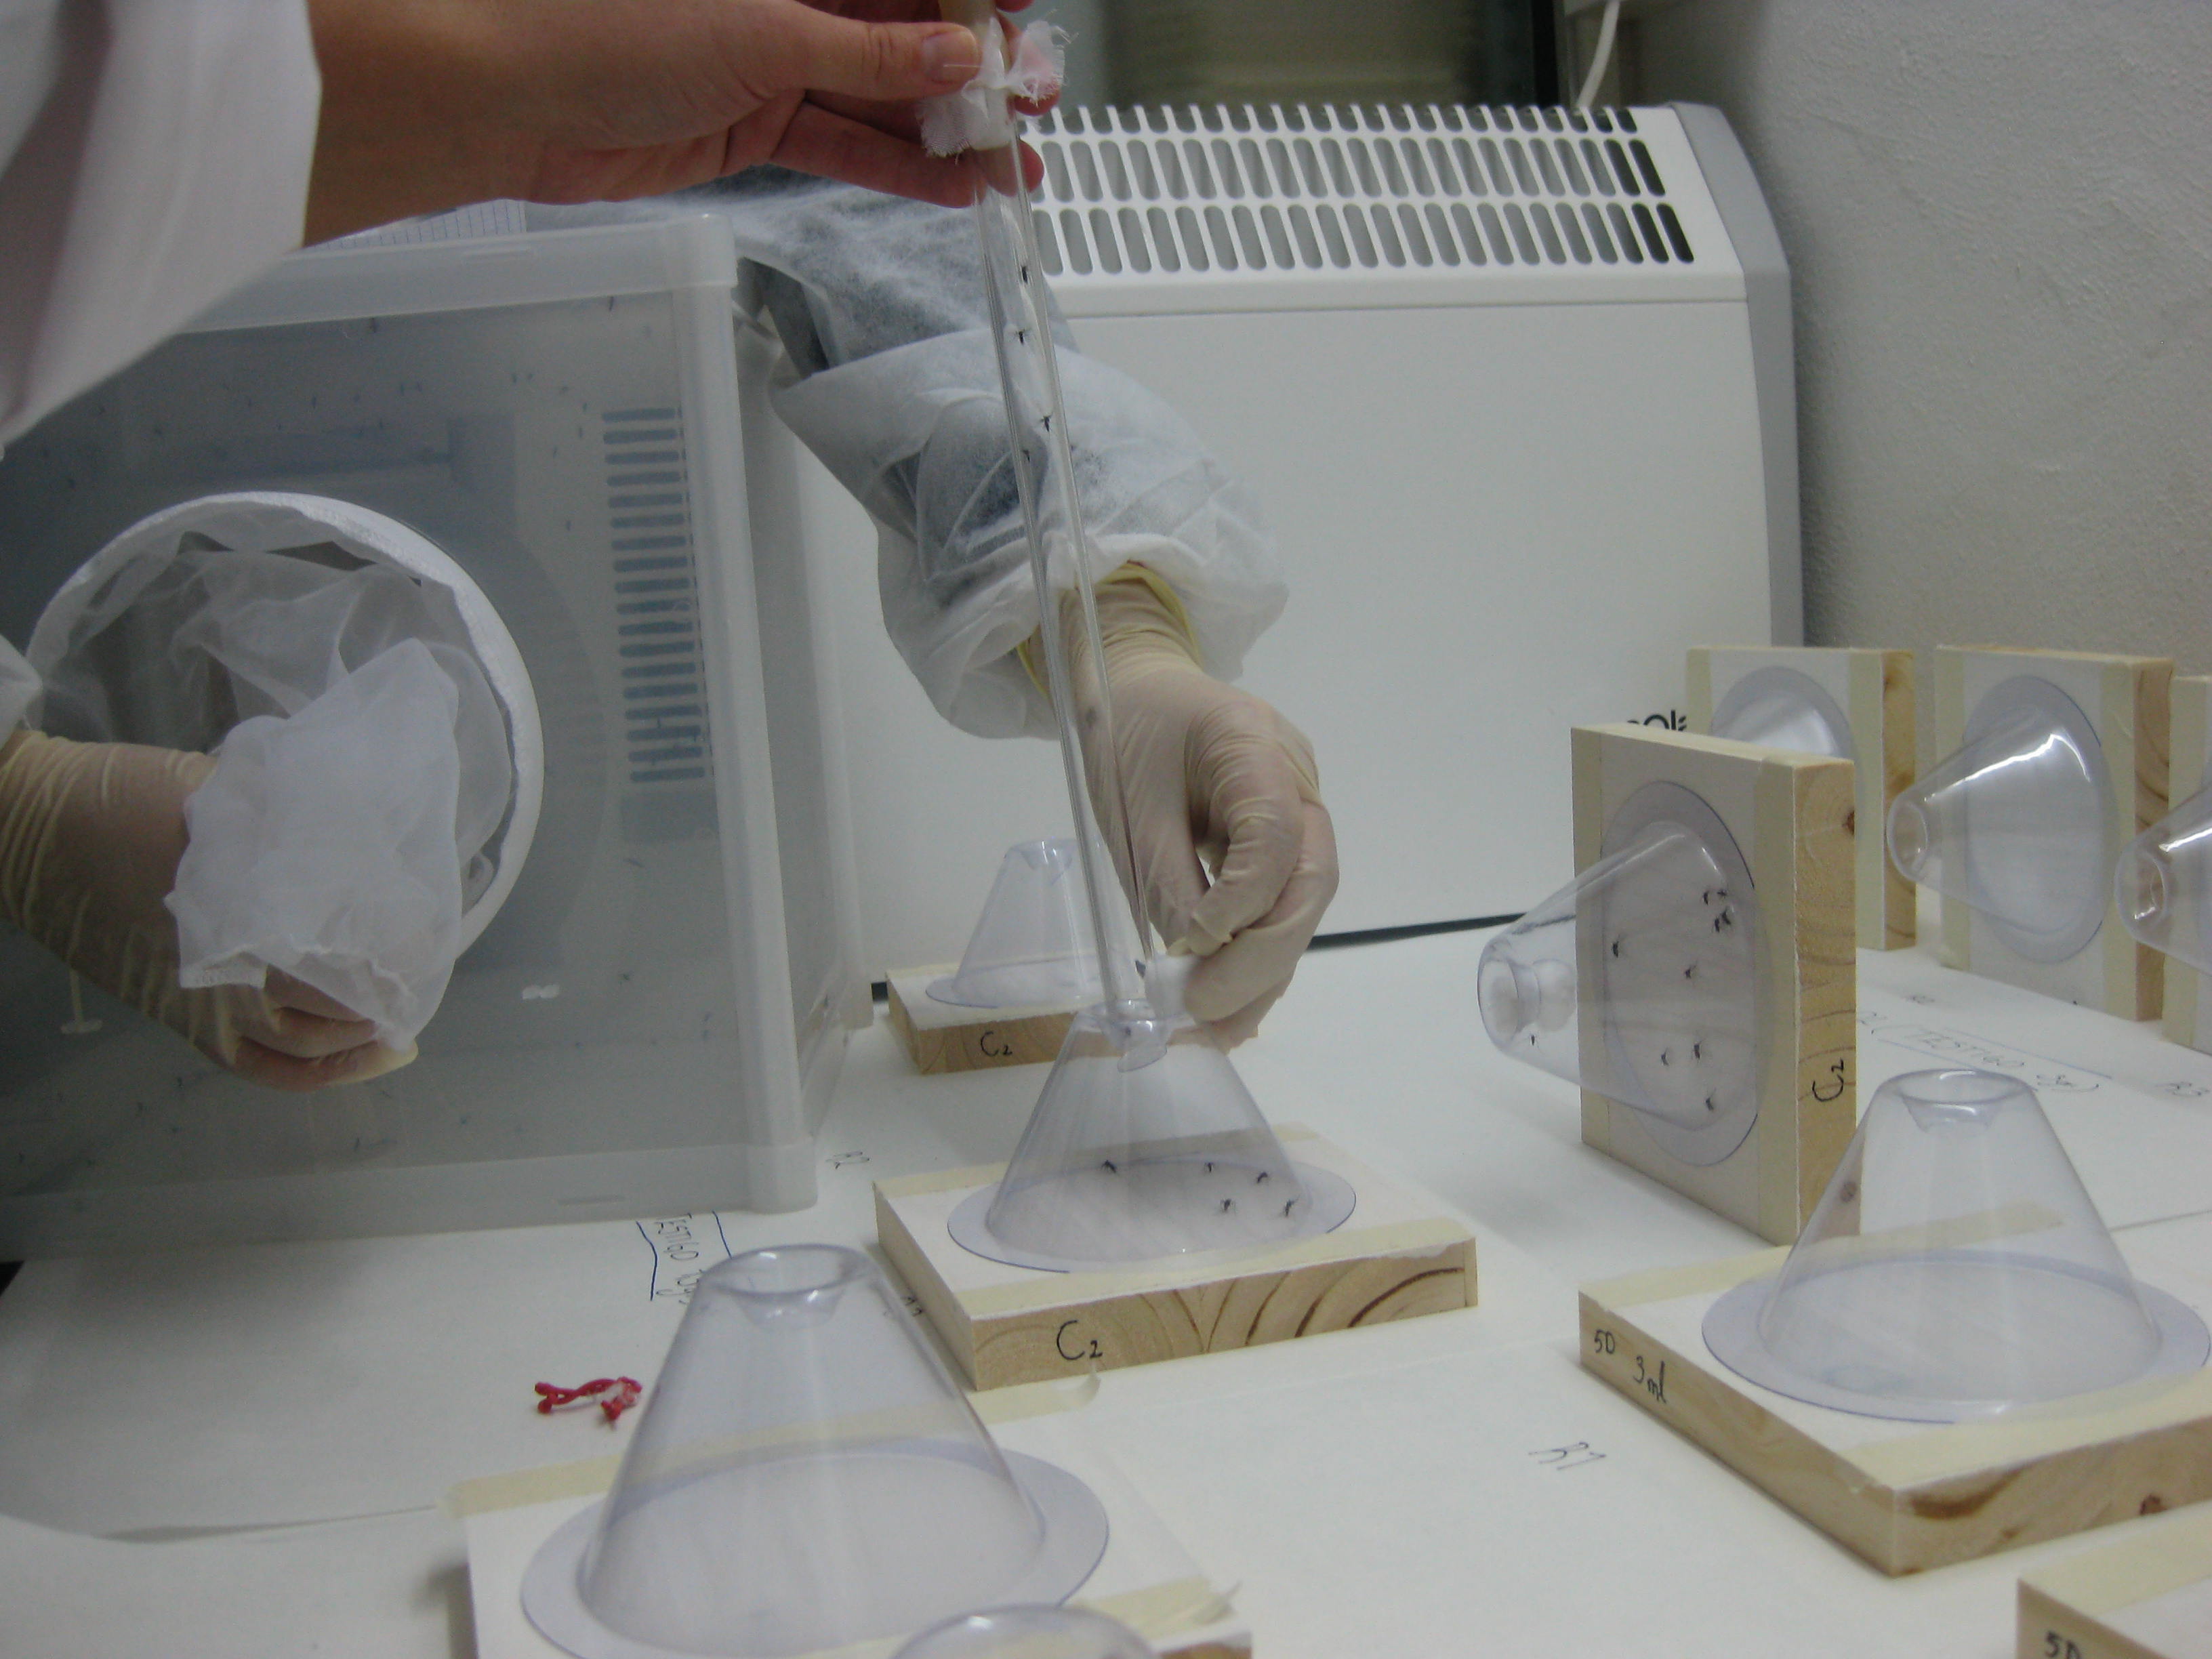 Estudios de la tecnología Inesfly en el laboratorio de Veterinaria de la Universidad de Zaragoza. Fuente: UniZar.